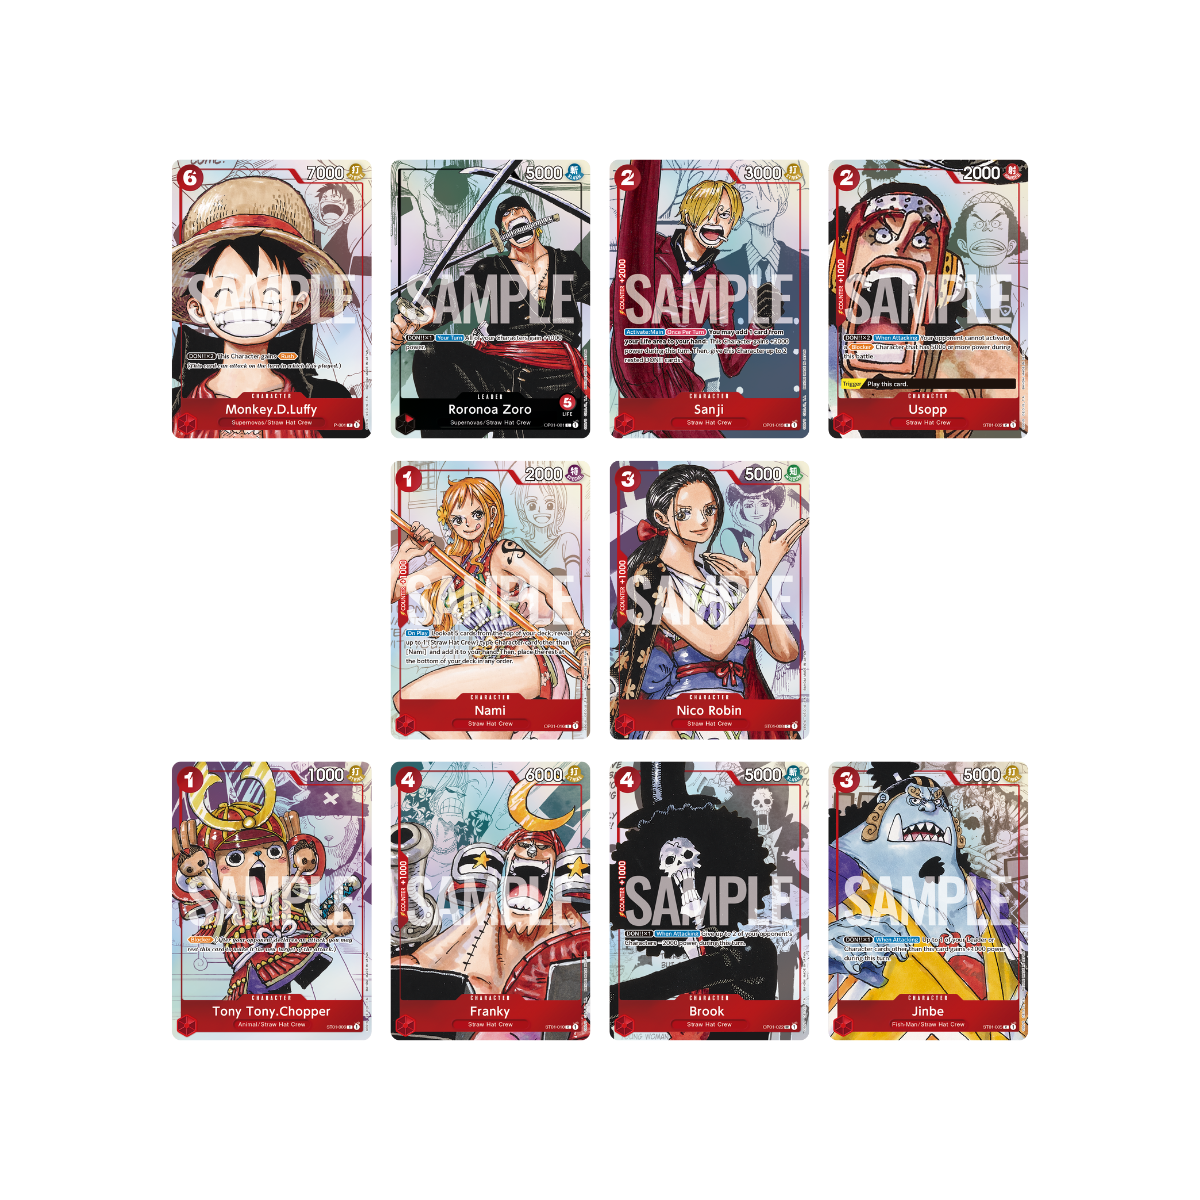 One Piece Card Game - Premium Card Collection - 25th Edition (englisch) - Erlebe die Abenteuer der Strohhutpiraten